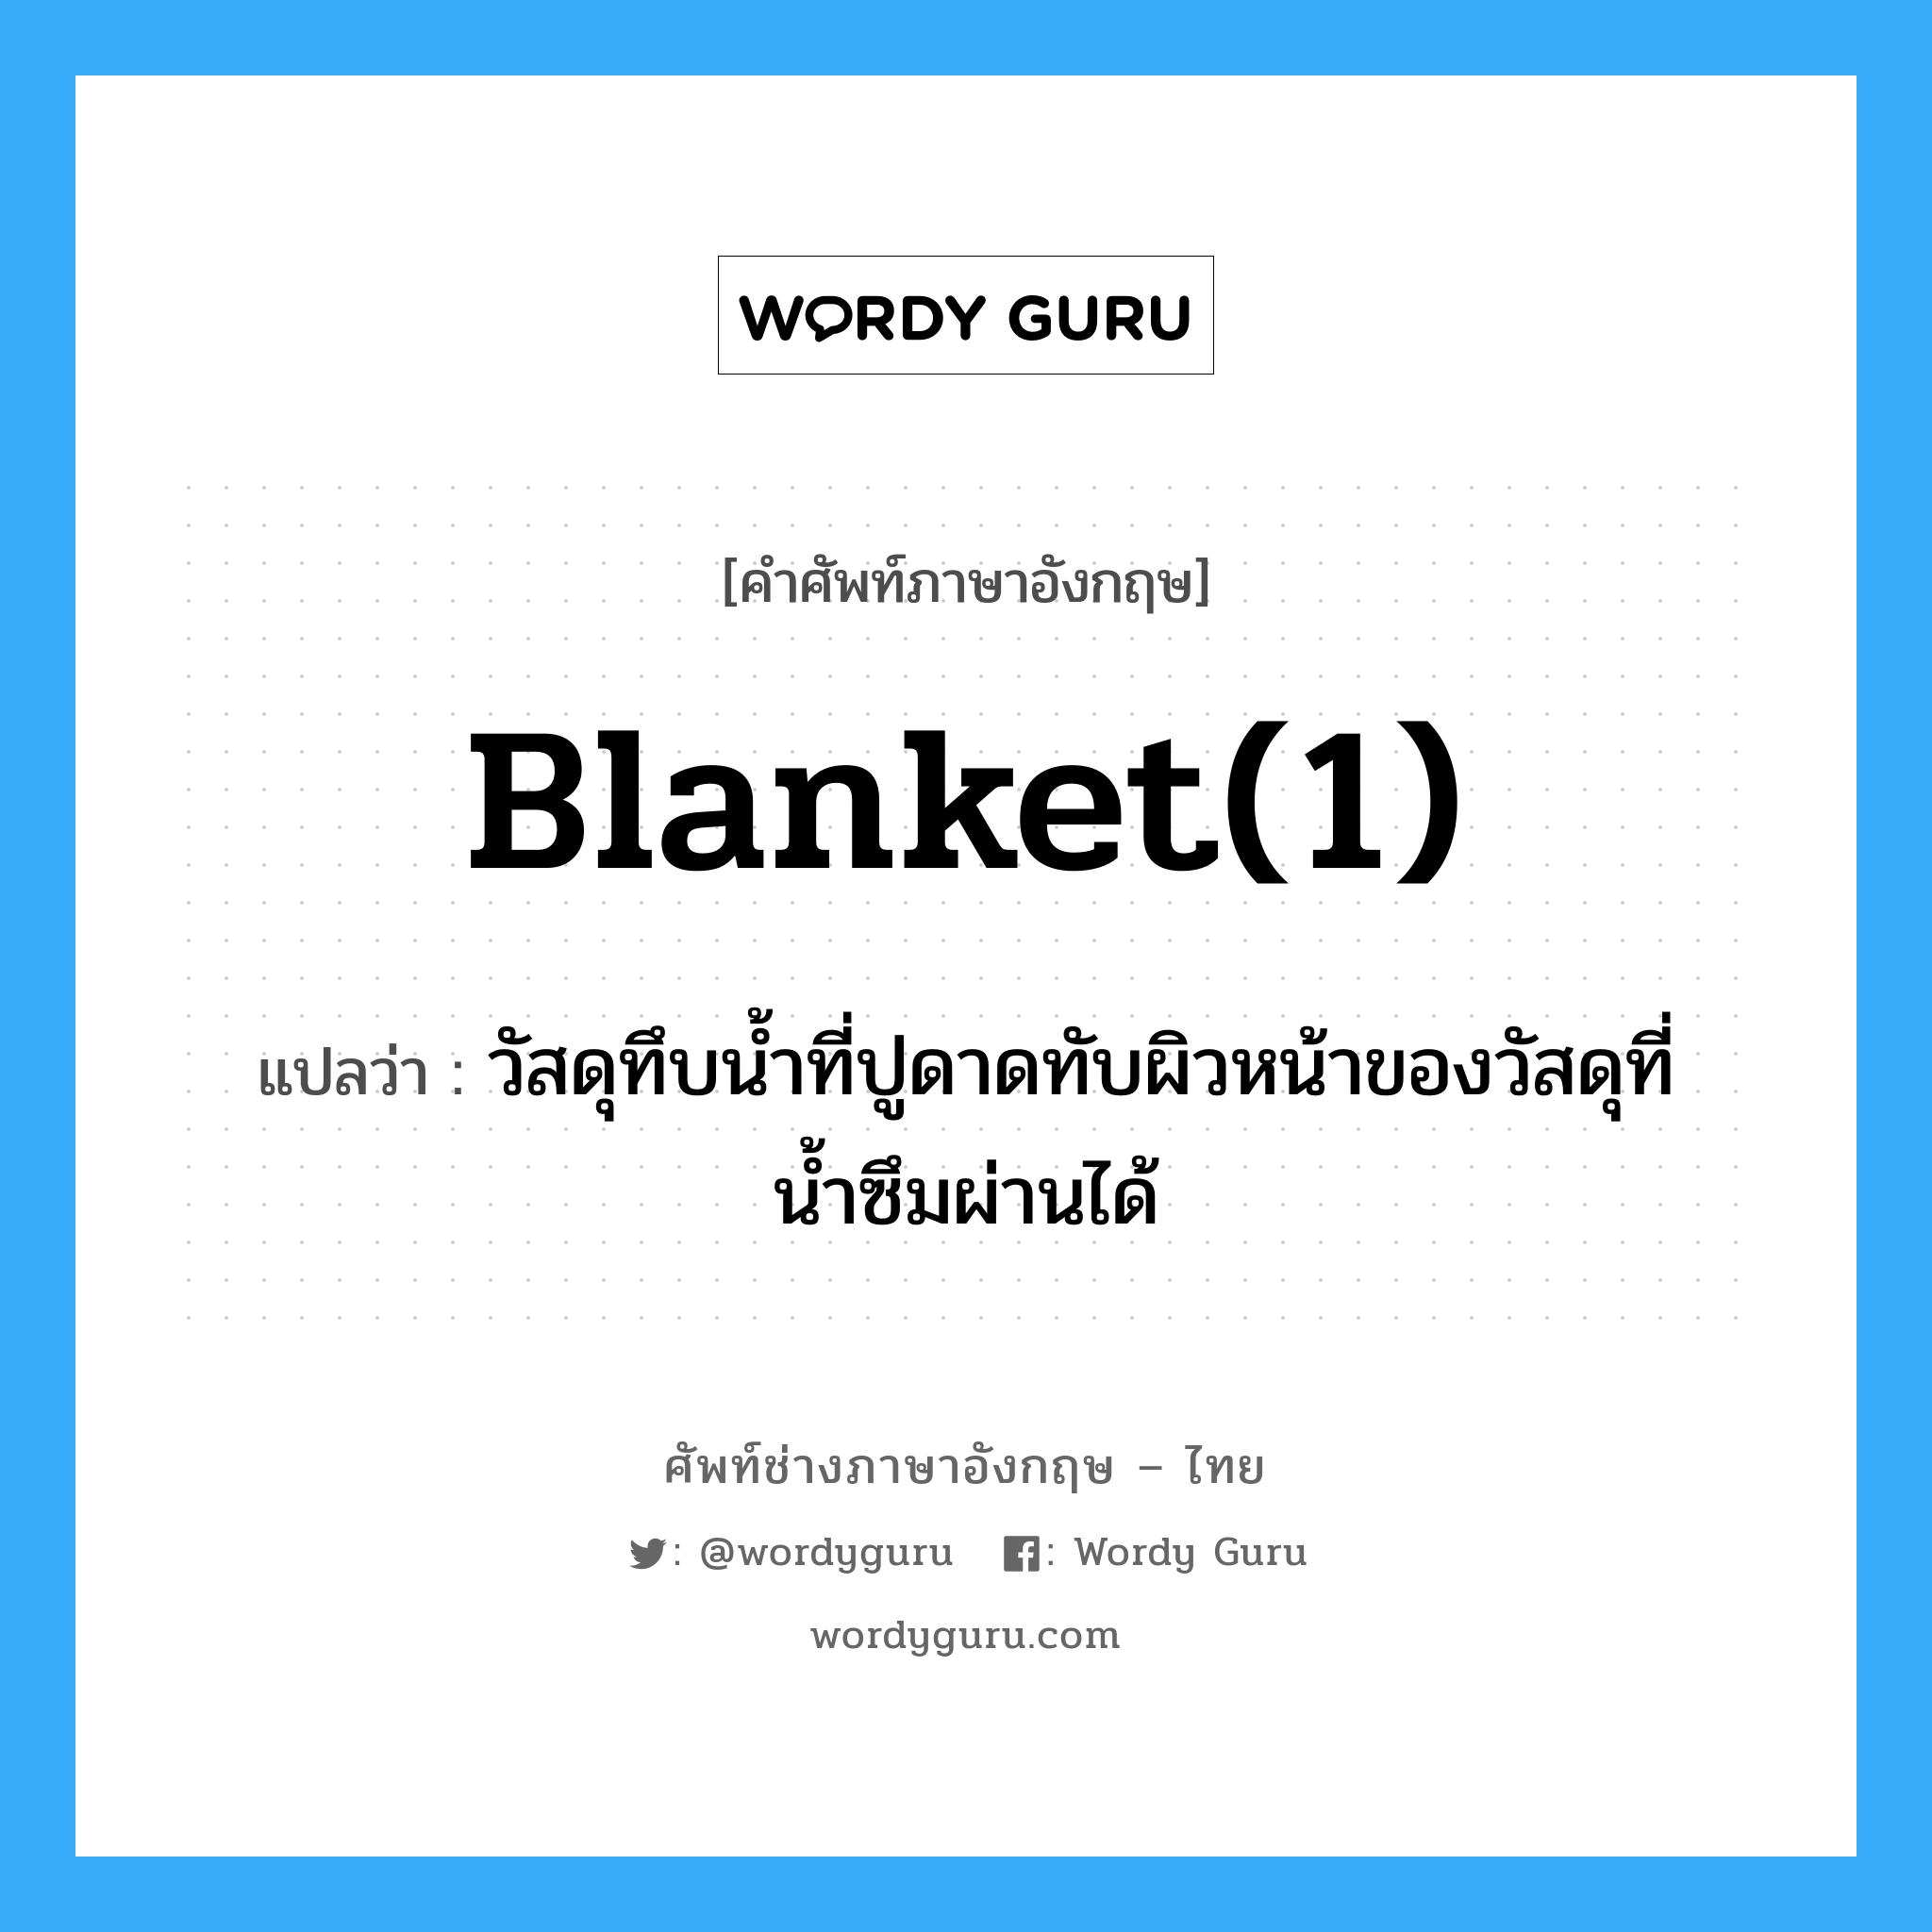 blanket(1) แปลว่า?, คำศัพท์ช่างภาษาอังกฤษ - ไทย blanket(1) คำศัพท์ภาษาอังกฤษ blanket(1) แปลว่า วัสดุทึบน้ำที่ปูดาดทับผิวหน้าของวัสดุที่น้ำซึมผ่านได้